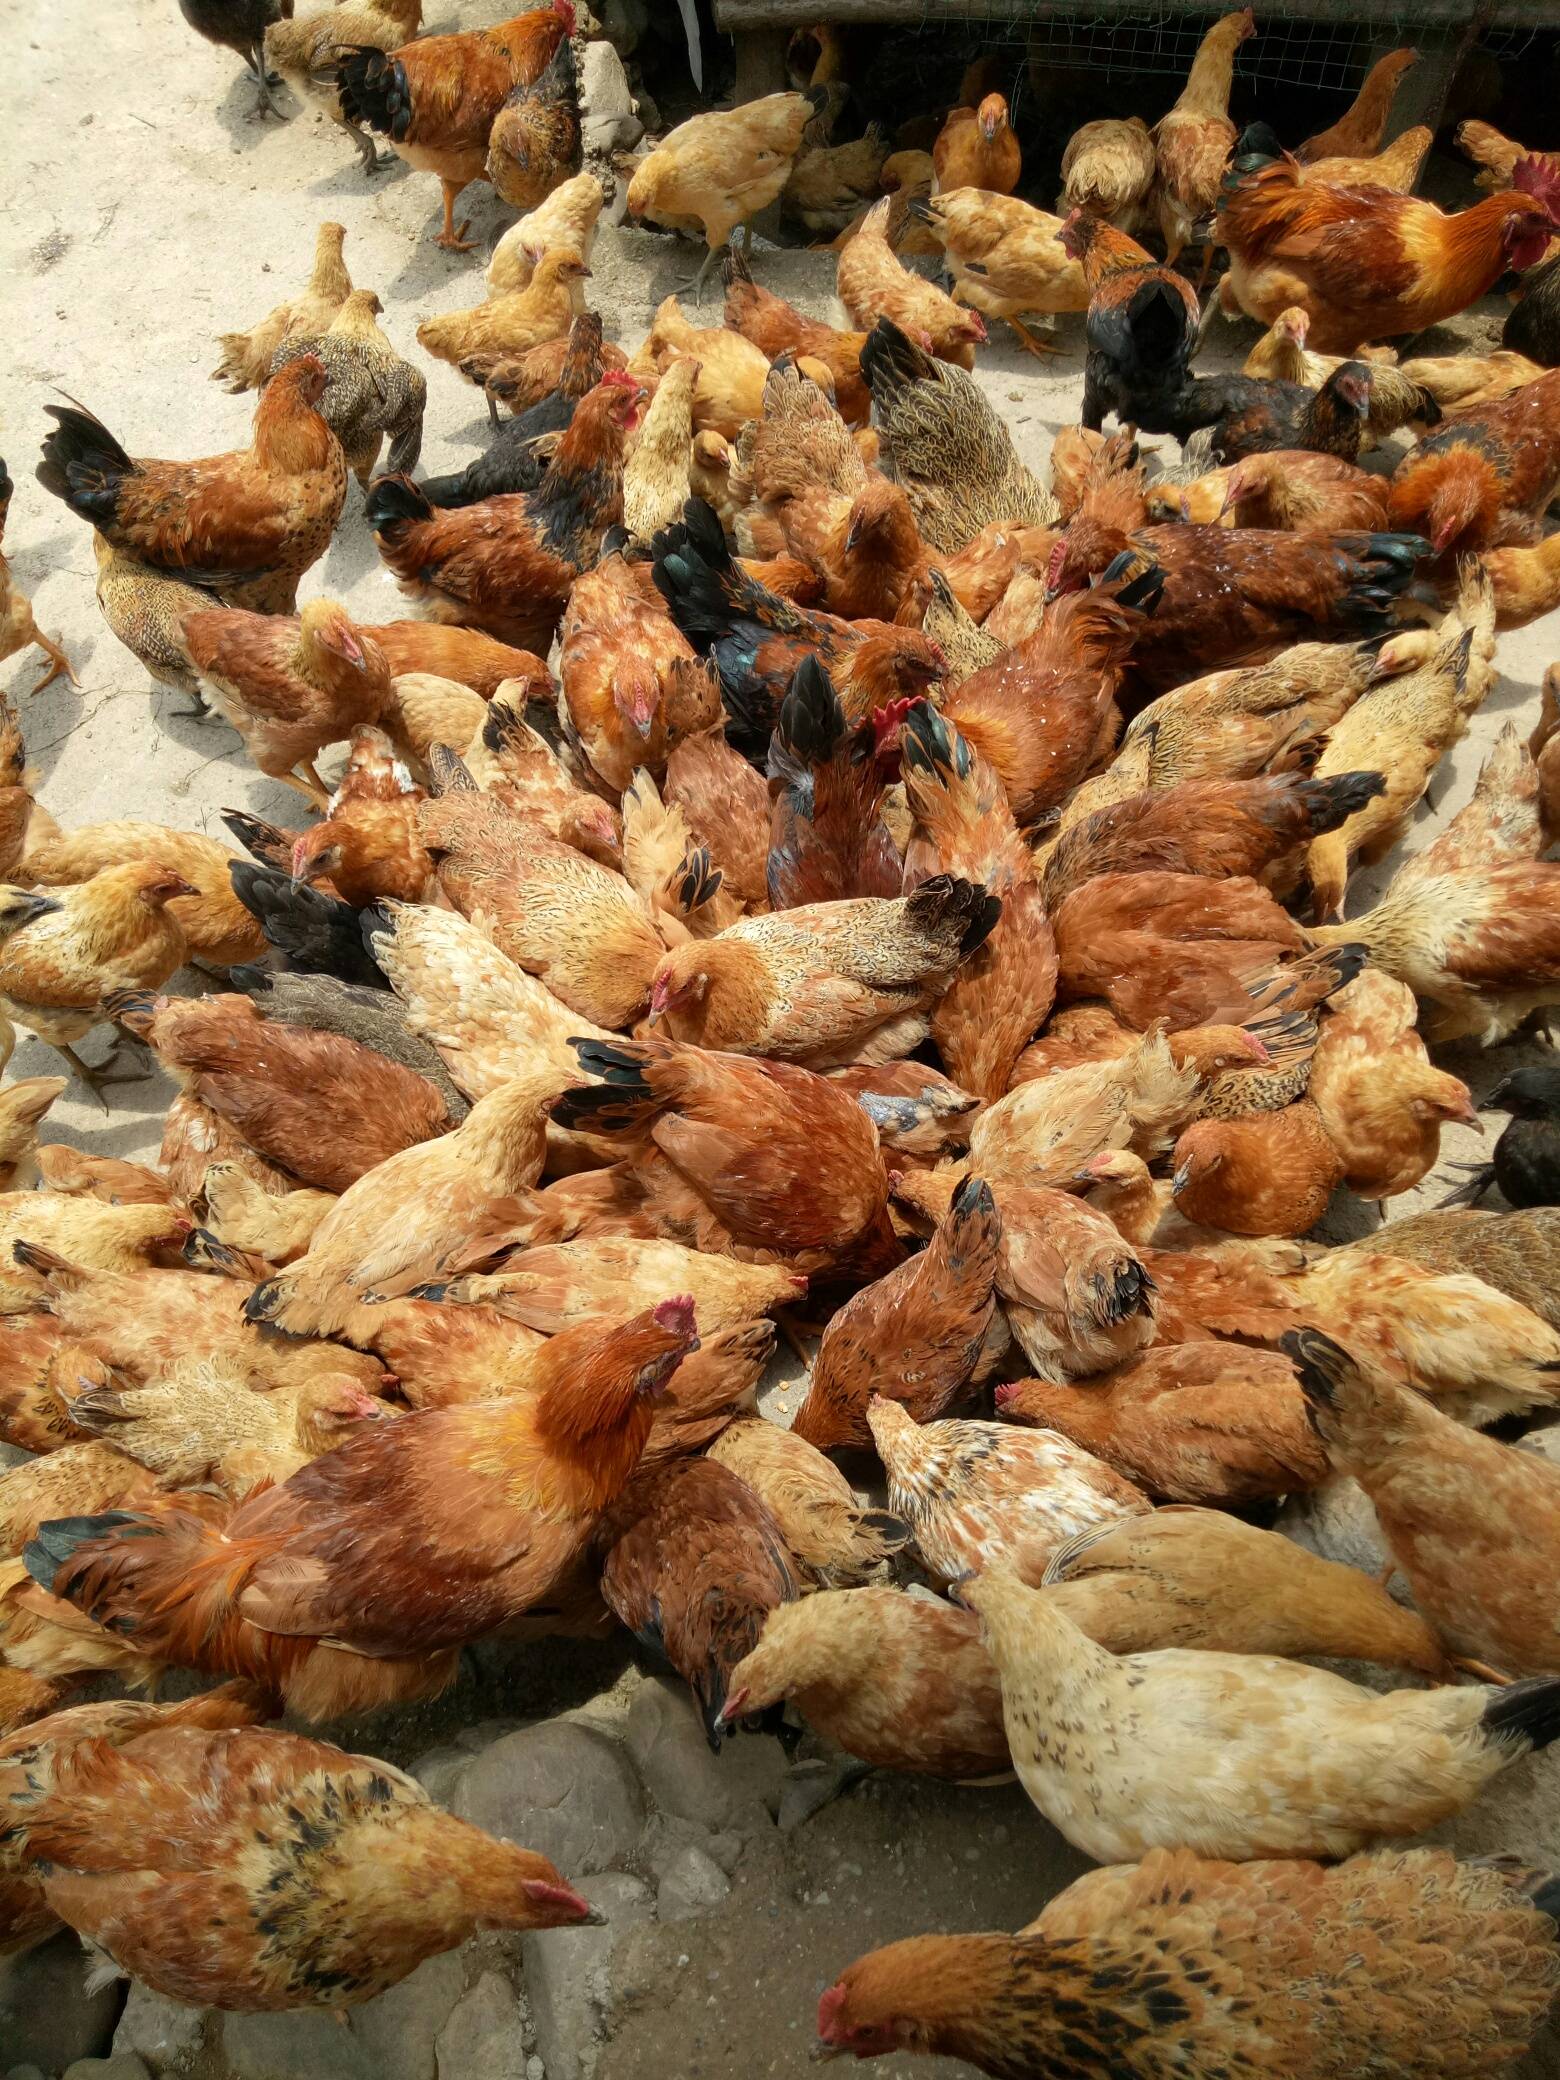 恭城县栗木镇石头村有大量土鸡出售，有需要的赶紧来！电话:1858571865585 / 作者:田素荣 / 帖子ID:271846